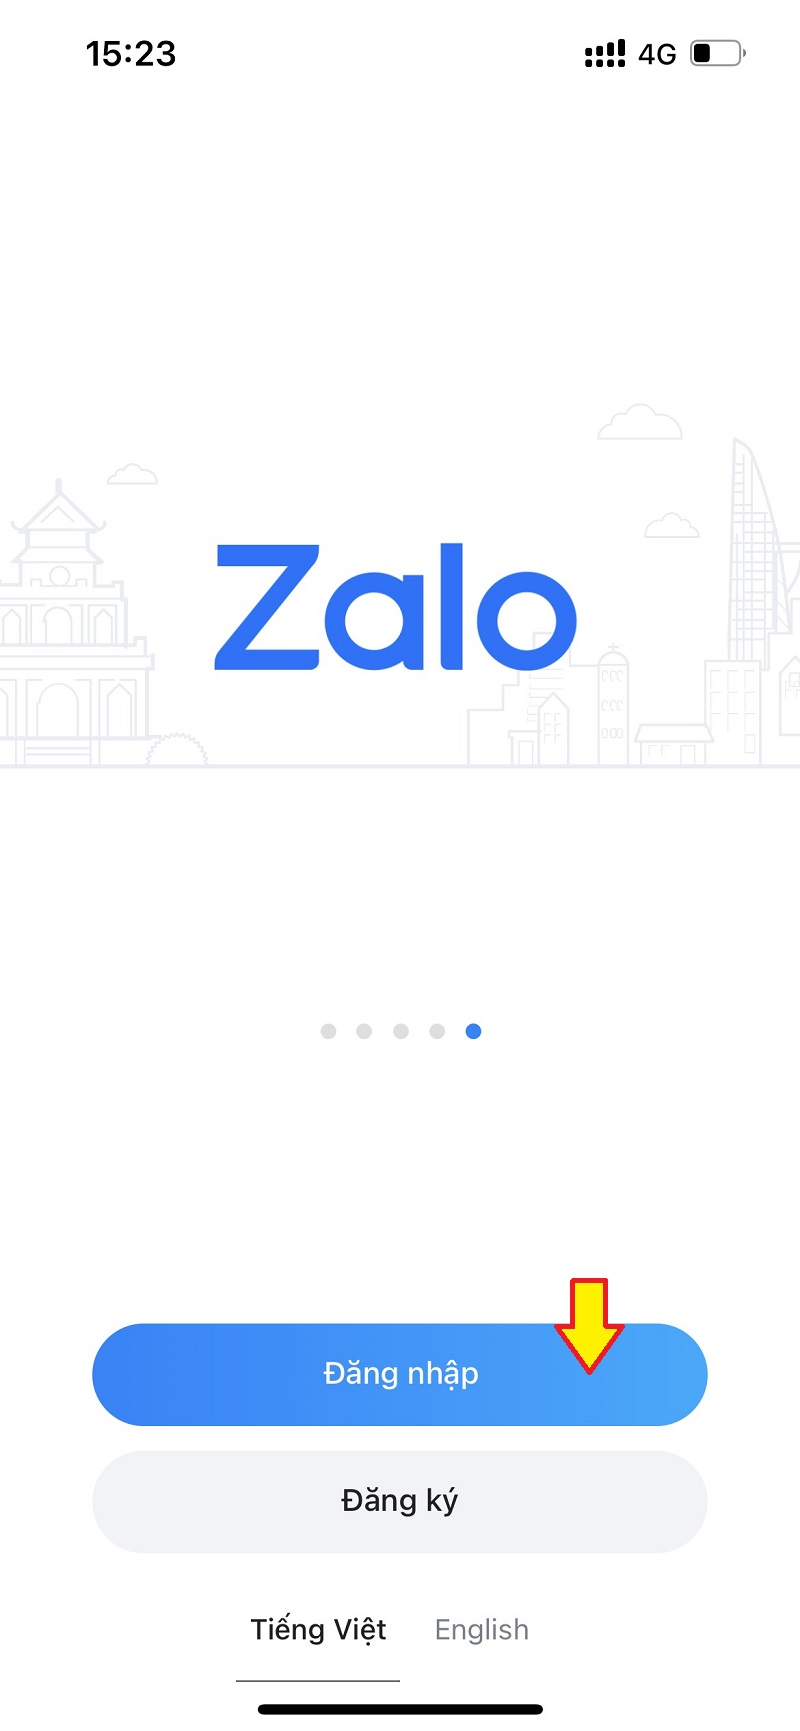 Cách đổi mật khẩu Zalo trên điện thoại khi quên mật khẩu cũ